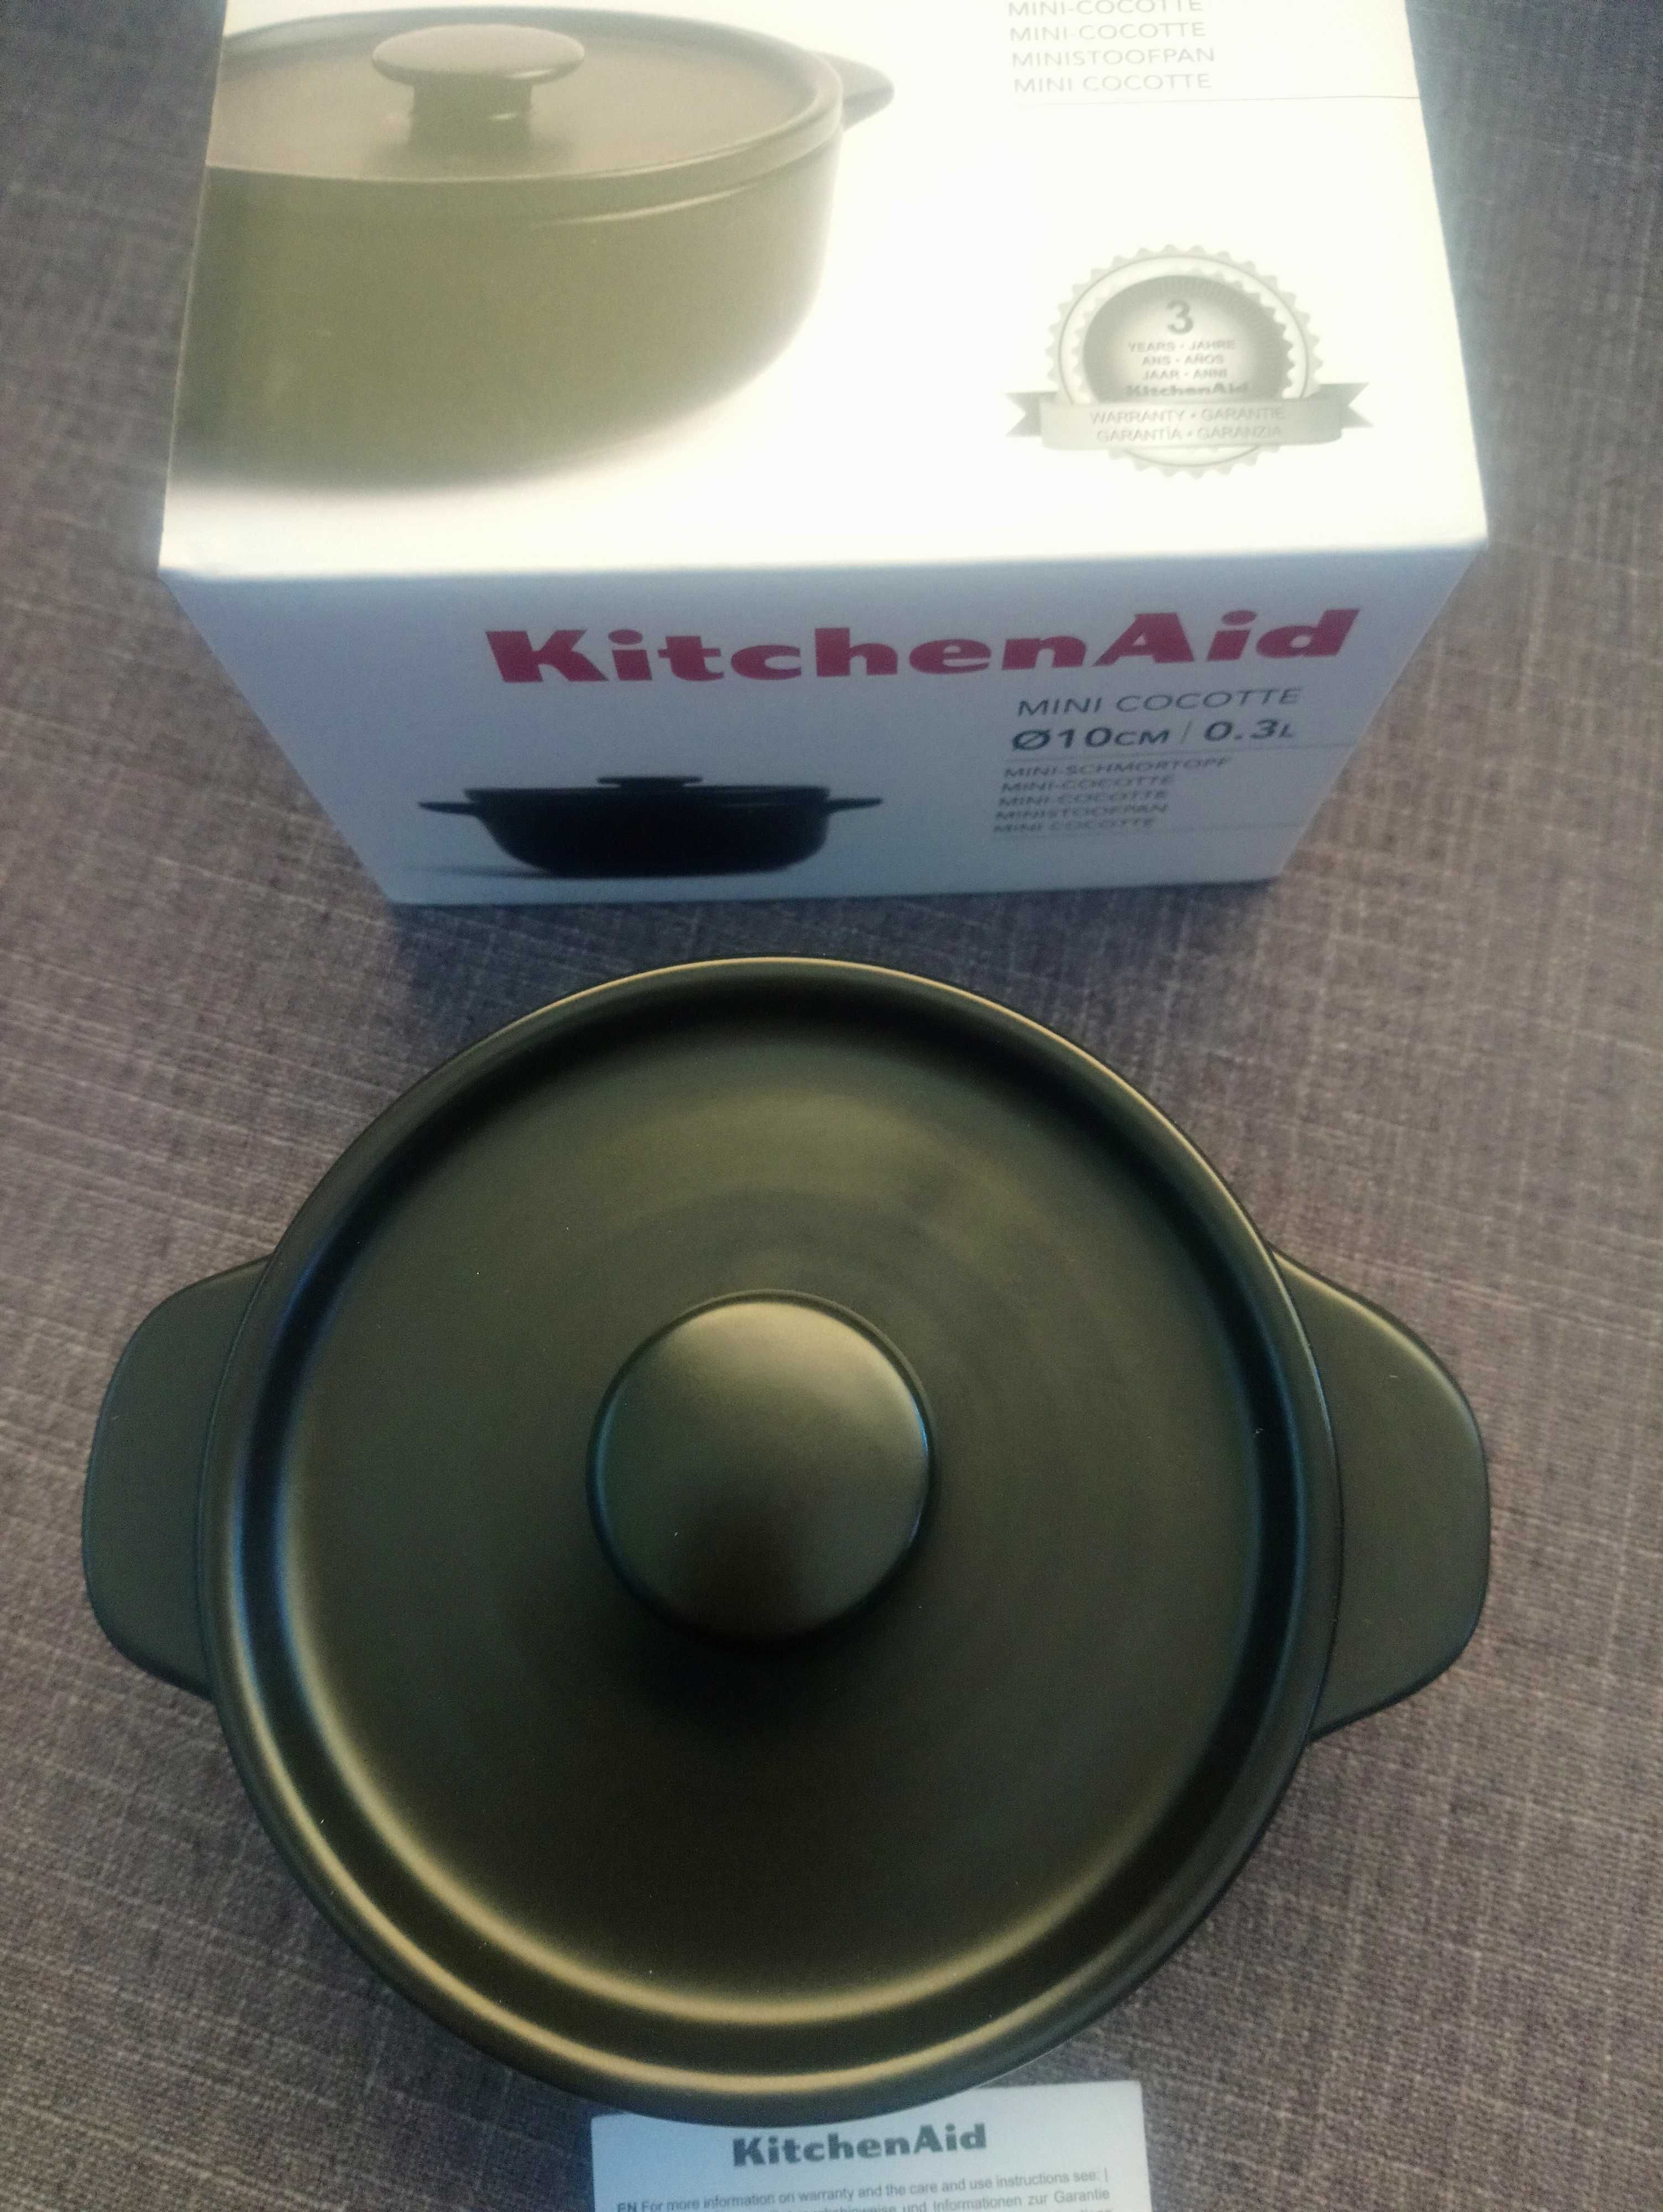 Mini cocotte 10 cm 0.3 L KitchenAid nova na caixa.